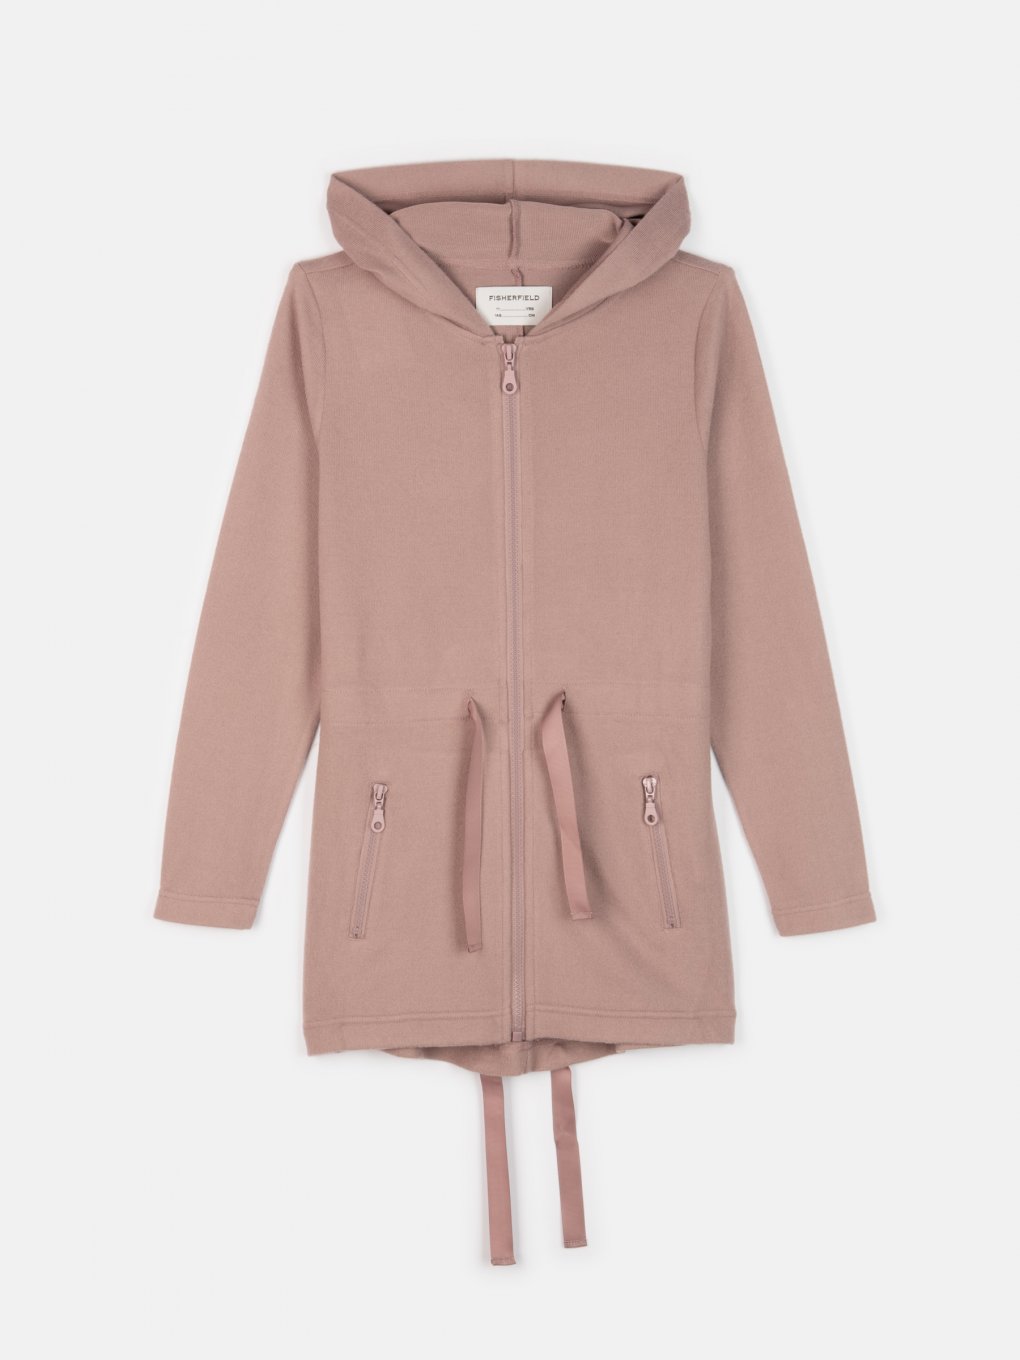 Soft longline zip-up hoodie